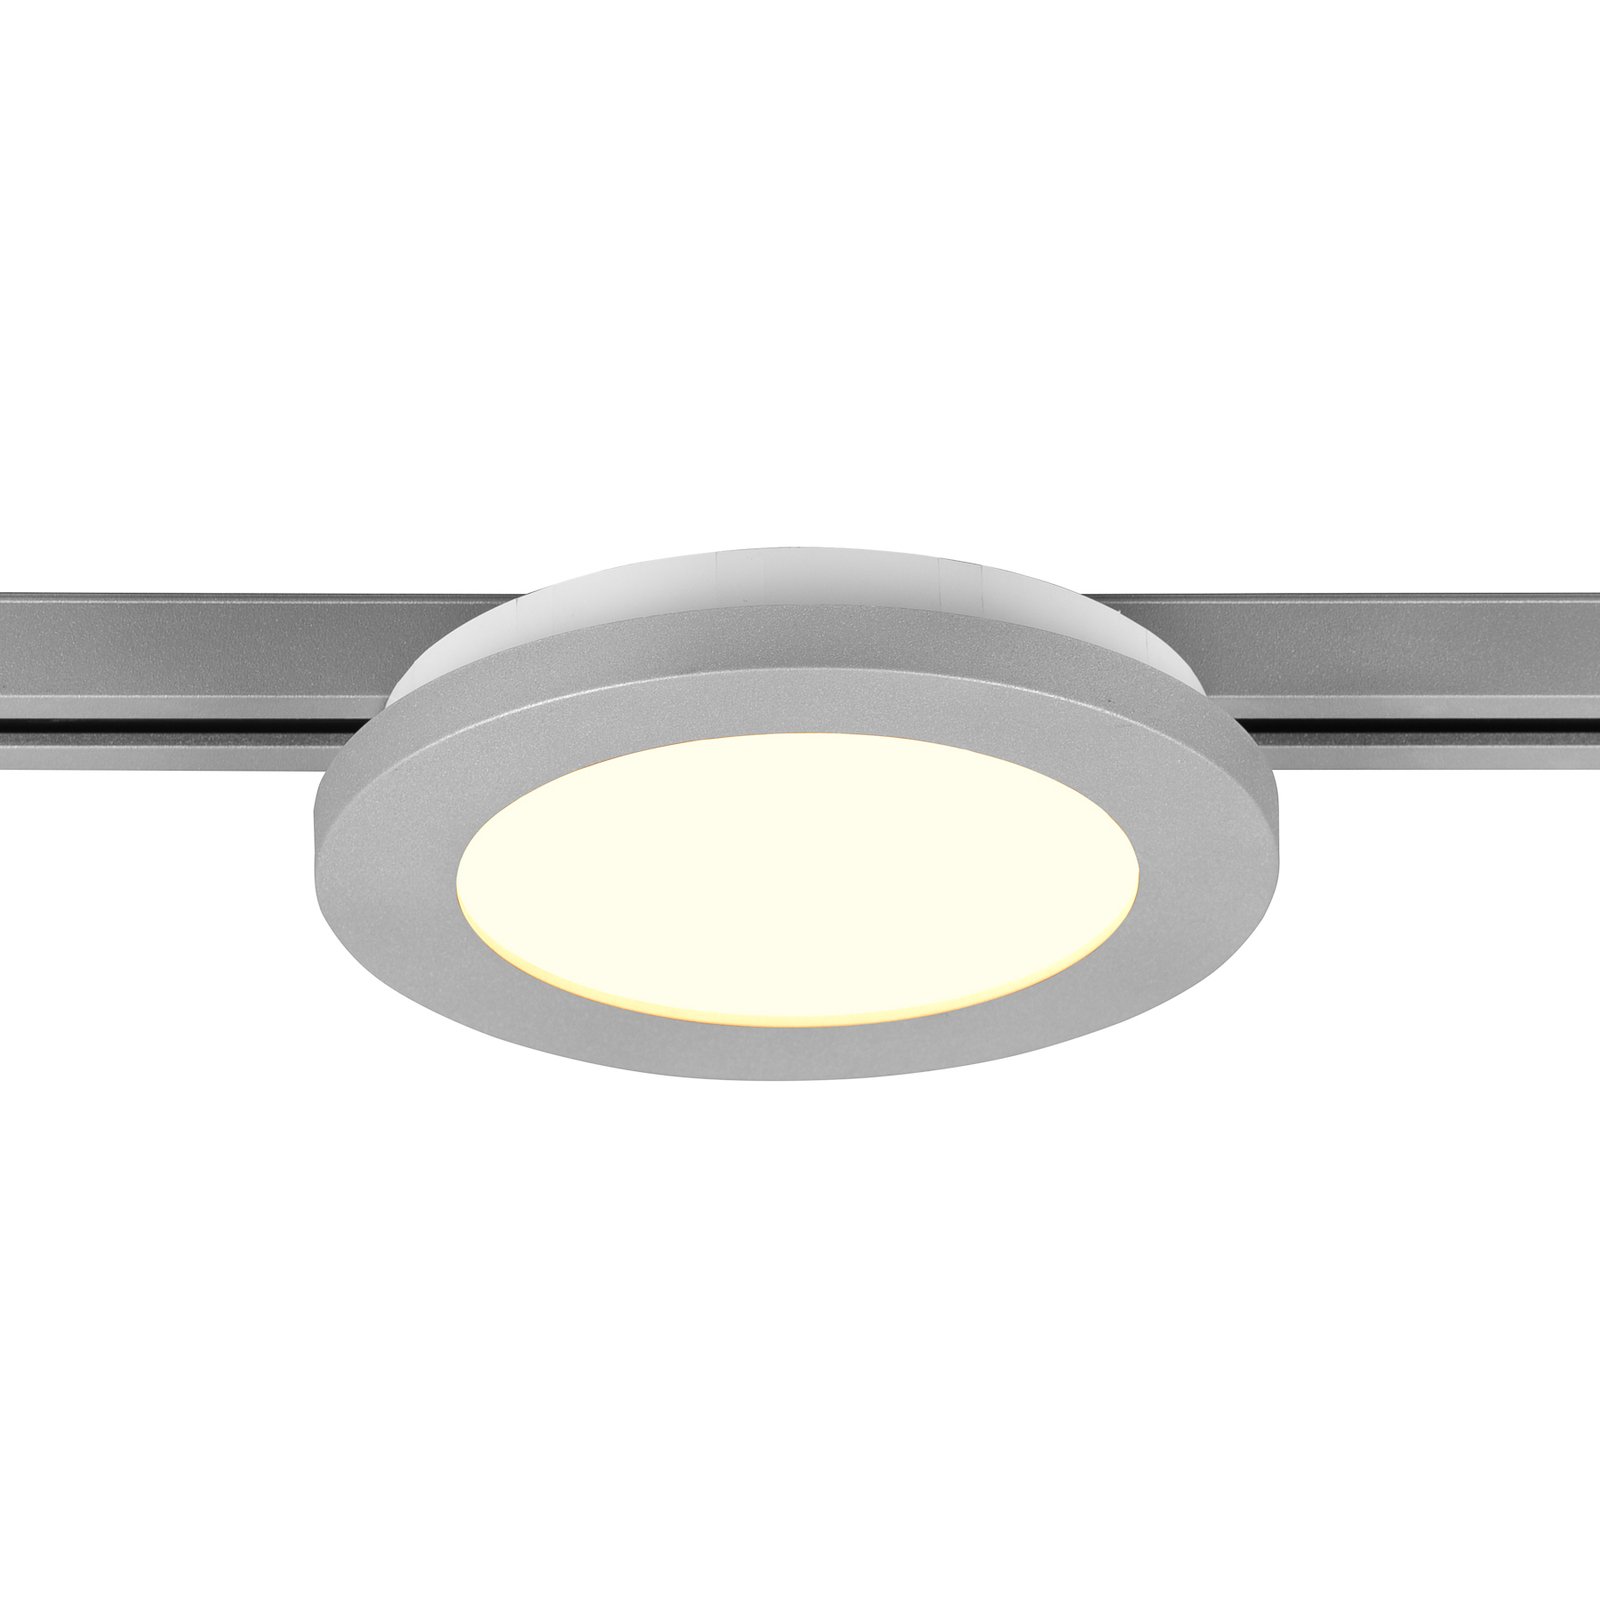 LED-Deckenlampe Camillus DUOline, Ø 17 cm, titan